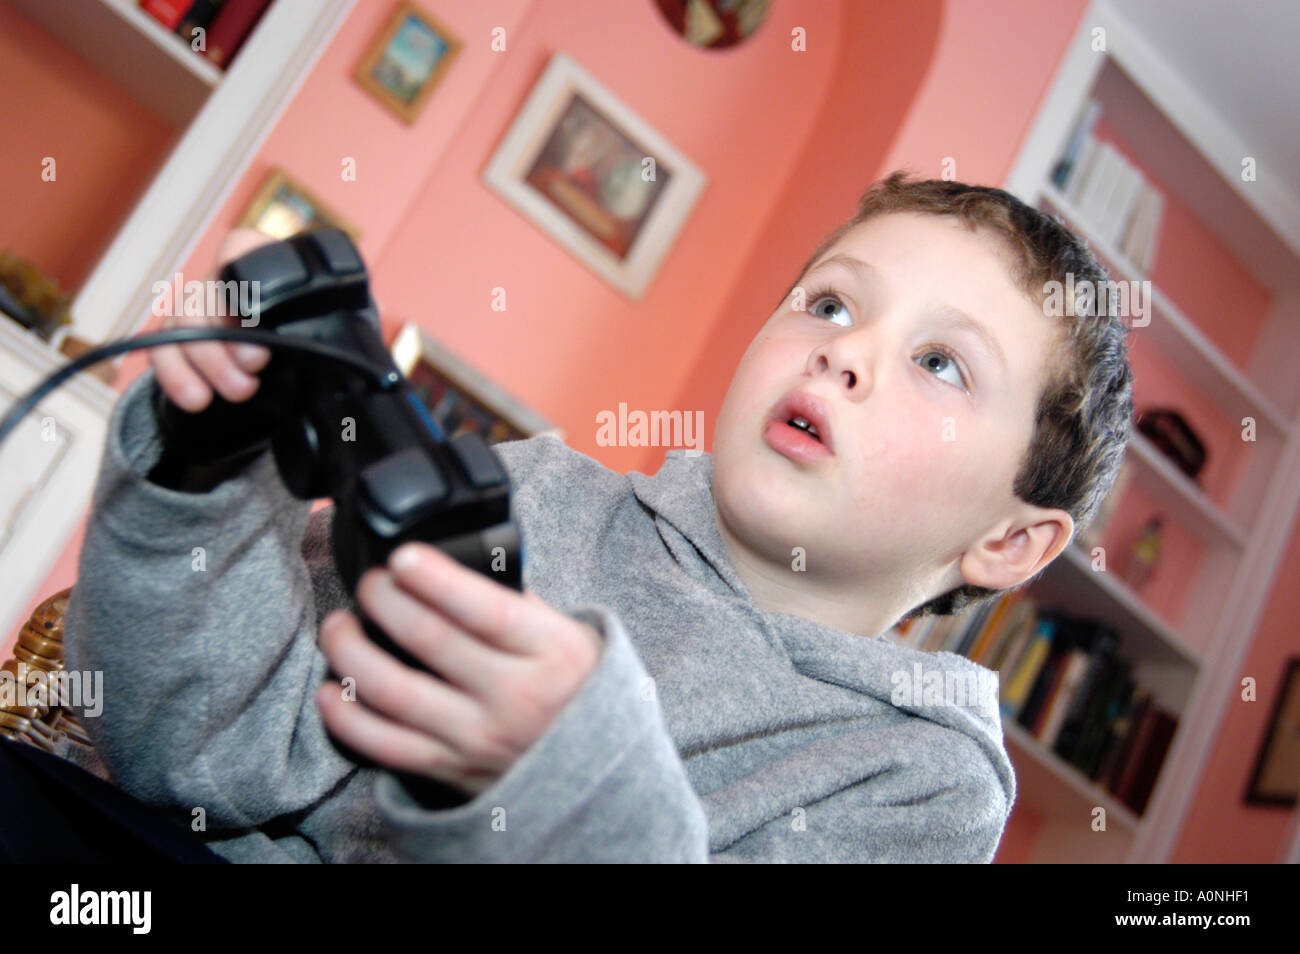 Junge von 6 Computer Spiel auf Sony Playstation Konsole, England, UK Stockfoto